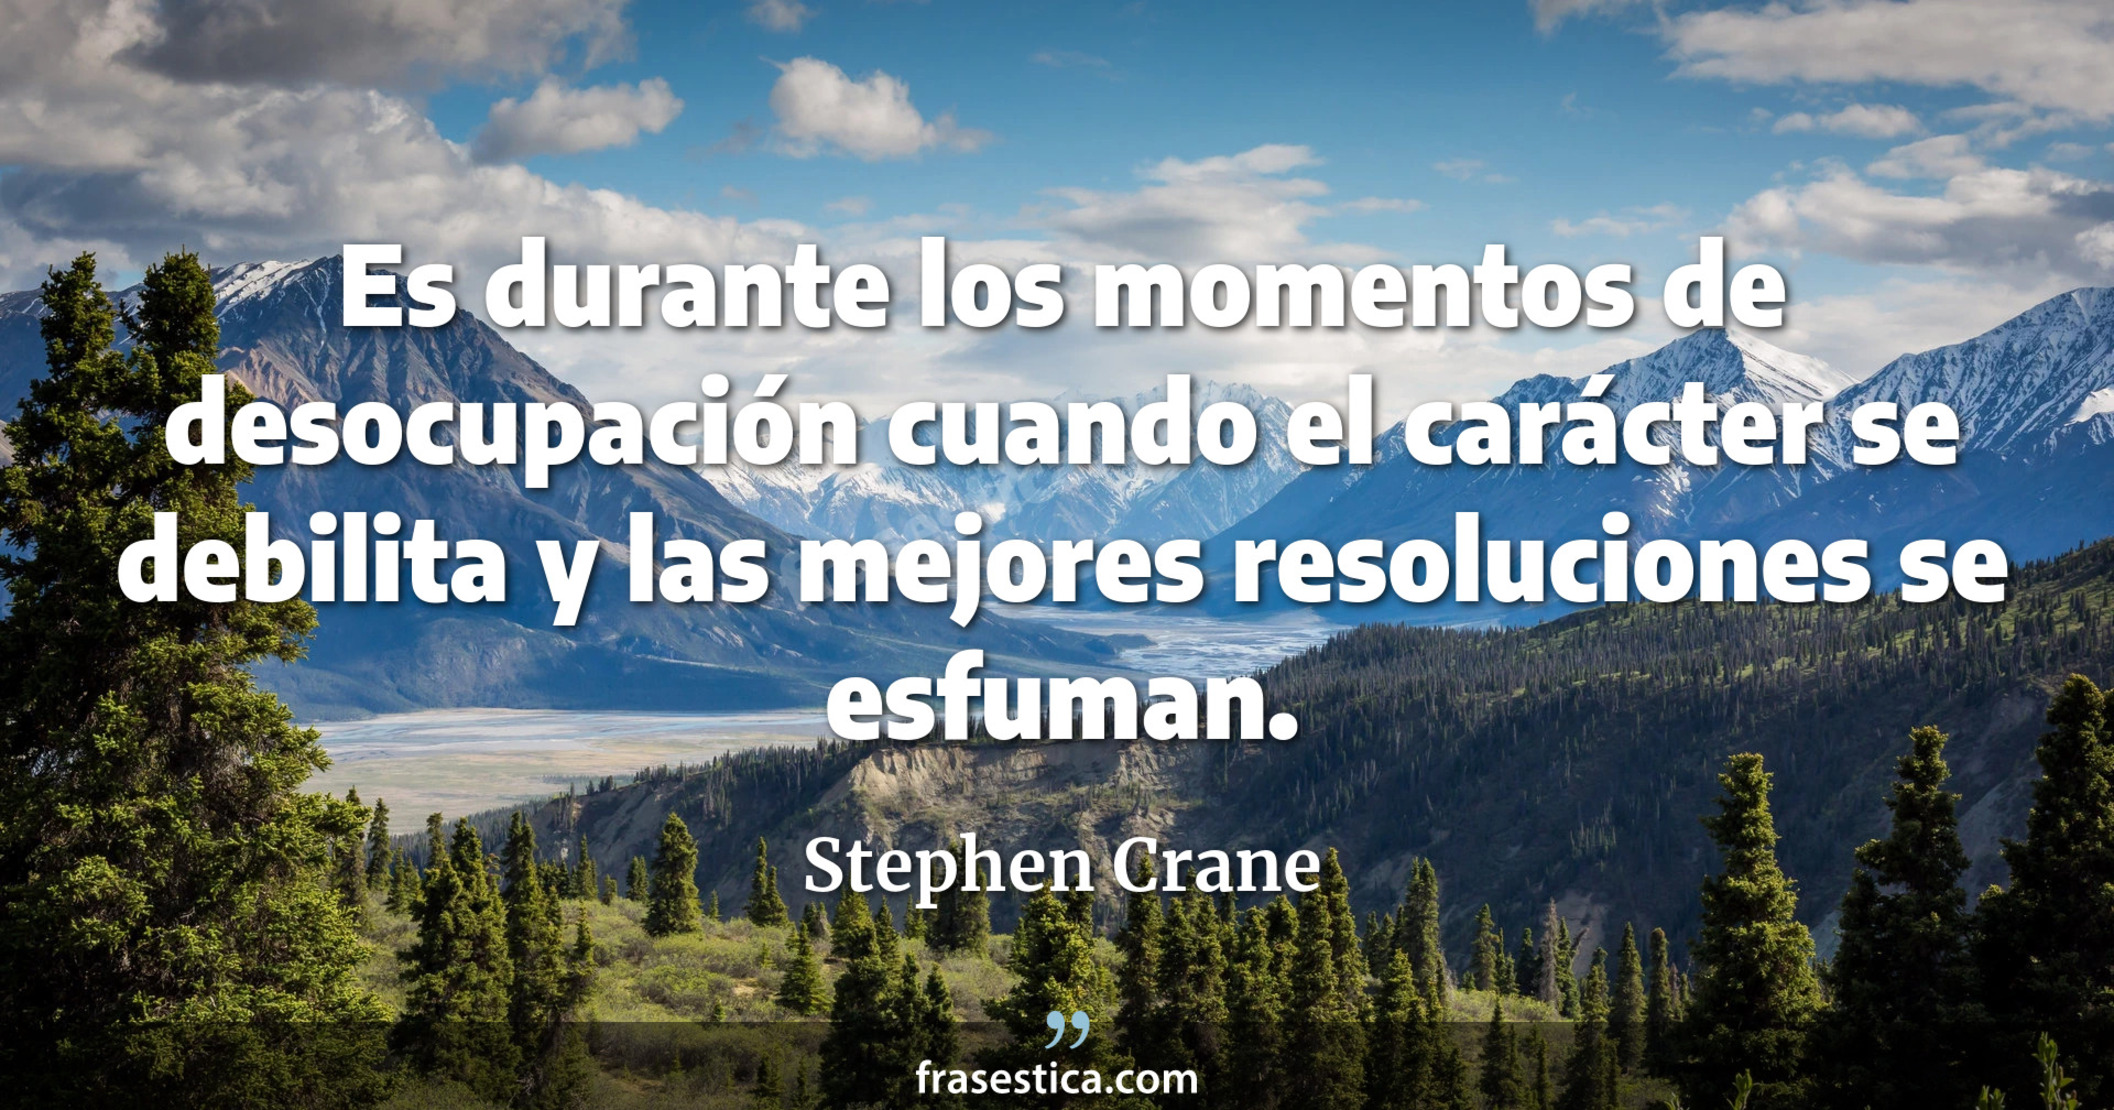 Es durante los momentos de desocupación cuando el carácter se debilita y las mejores resoluciones se esfuman. - Stephen Crane